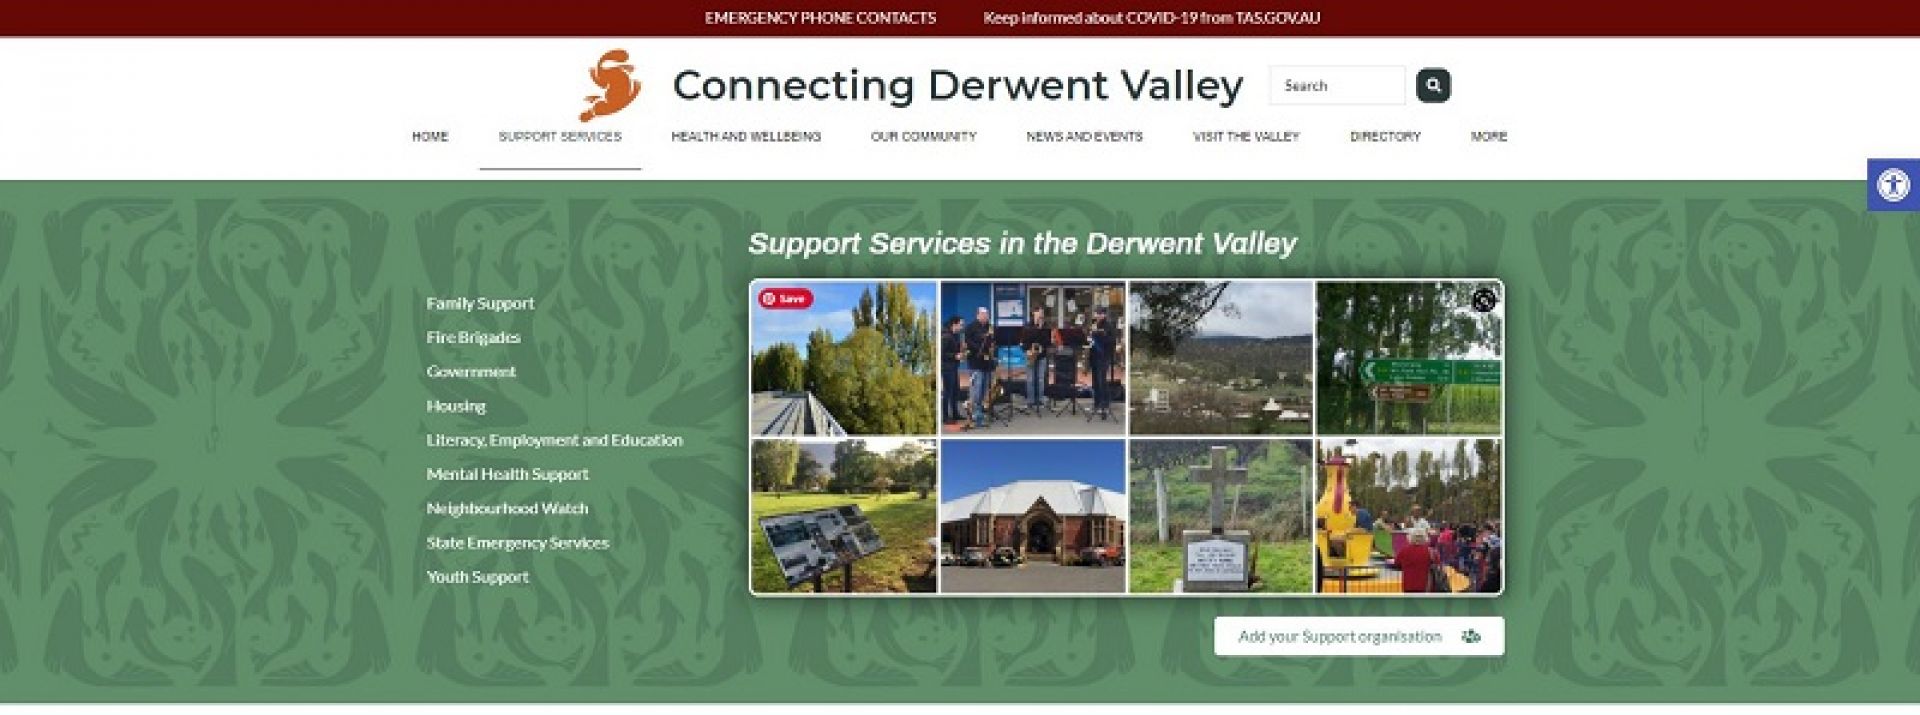 Connecting Derwent Valley website blade